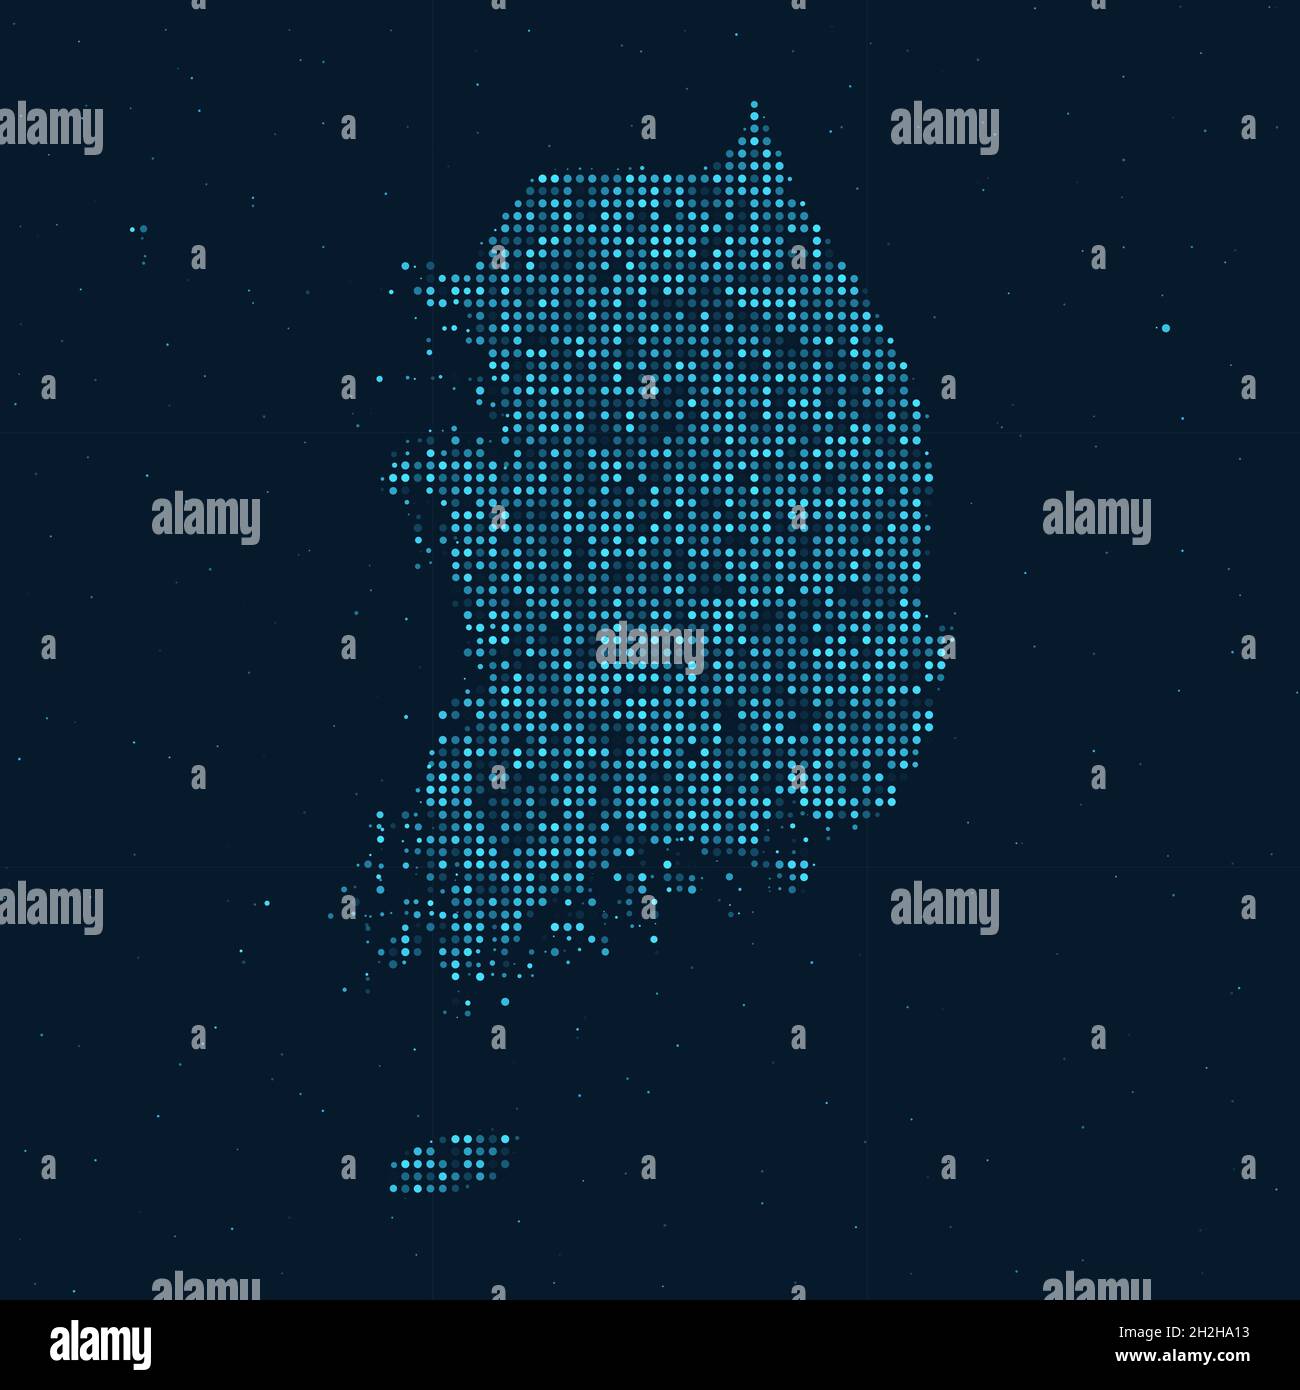 Mezzitoni astratti punteggiati con effetto stellato su sfondo blu scuro con mappa della Corea del Sud. Tecnologia digitale punteggiata sfera di design e struttura. ve Illustrazione Vettoriale